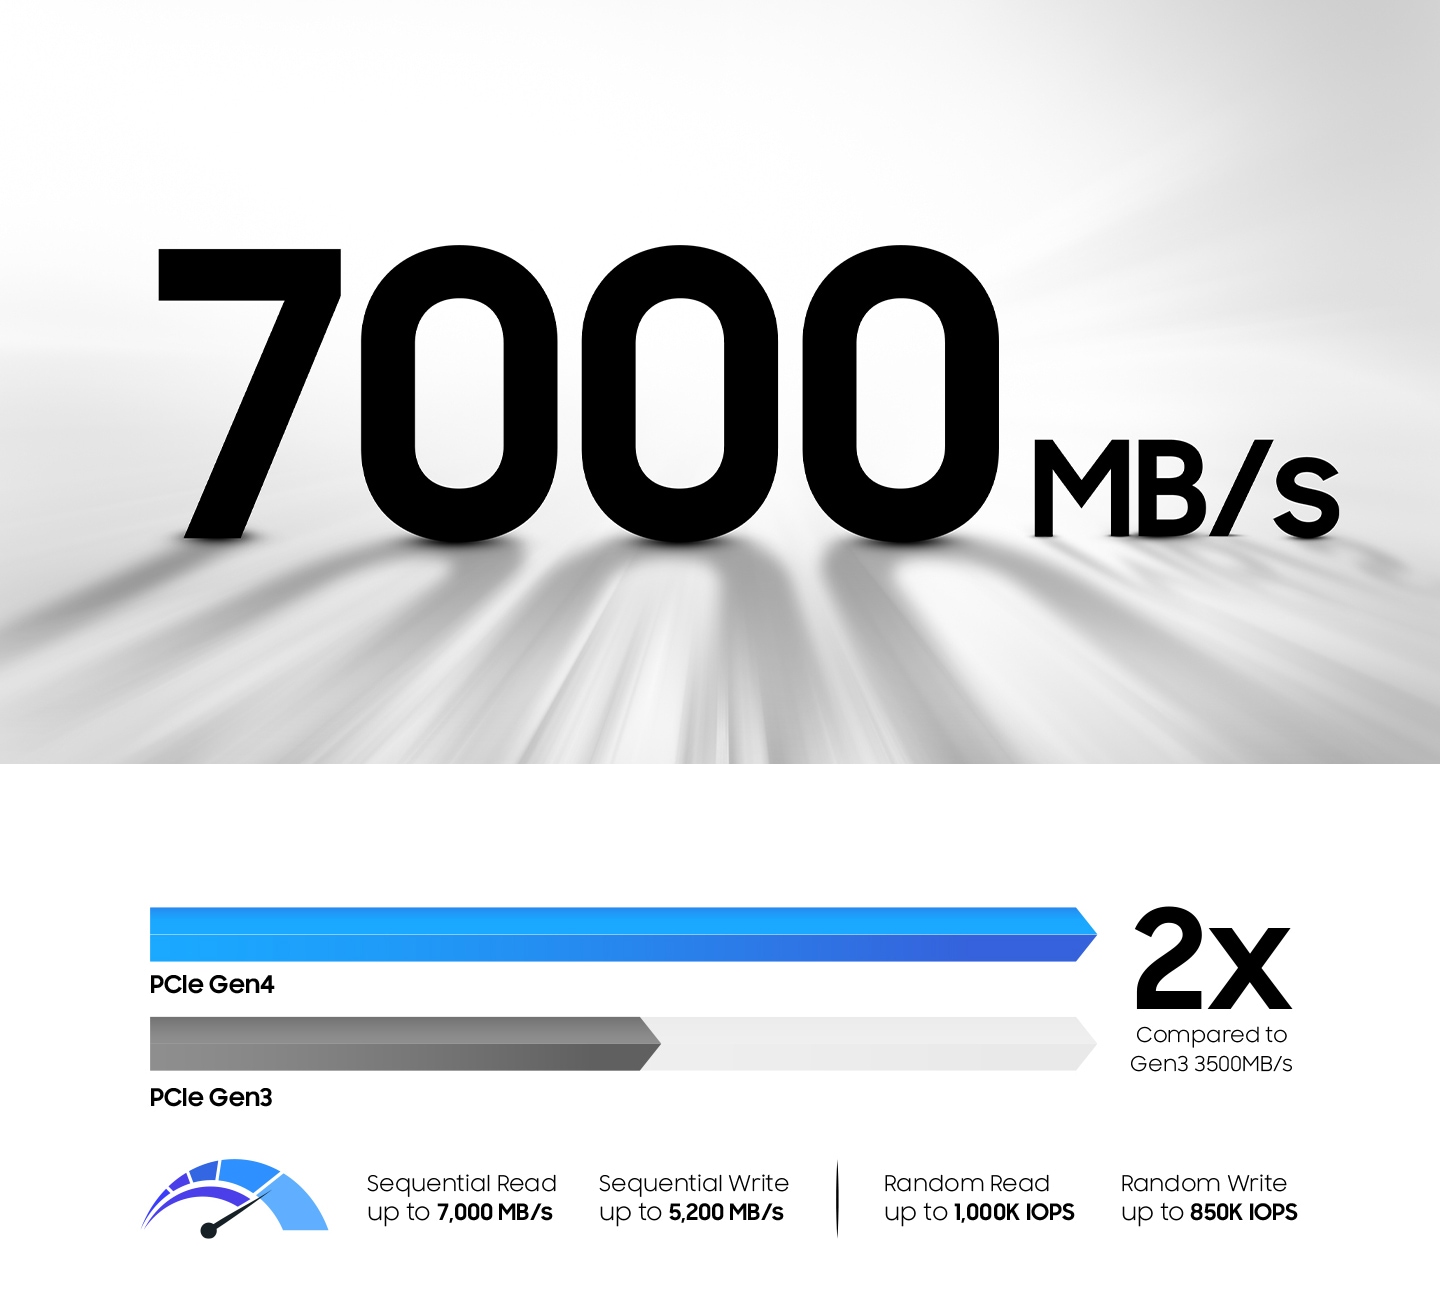 50%の高速化である7,000 MB/秒のシーケンシャル読み取り速度を実現しているGen4の解説画像。